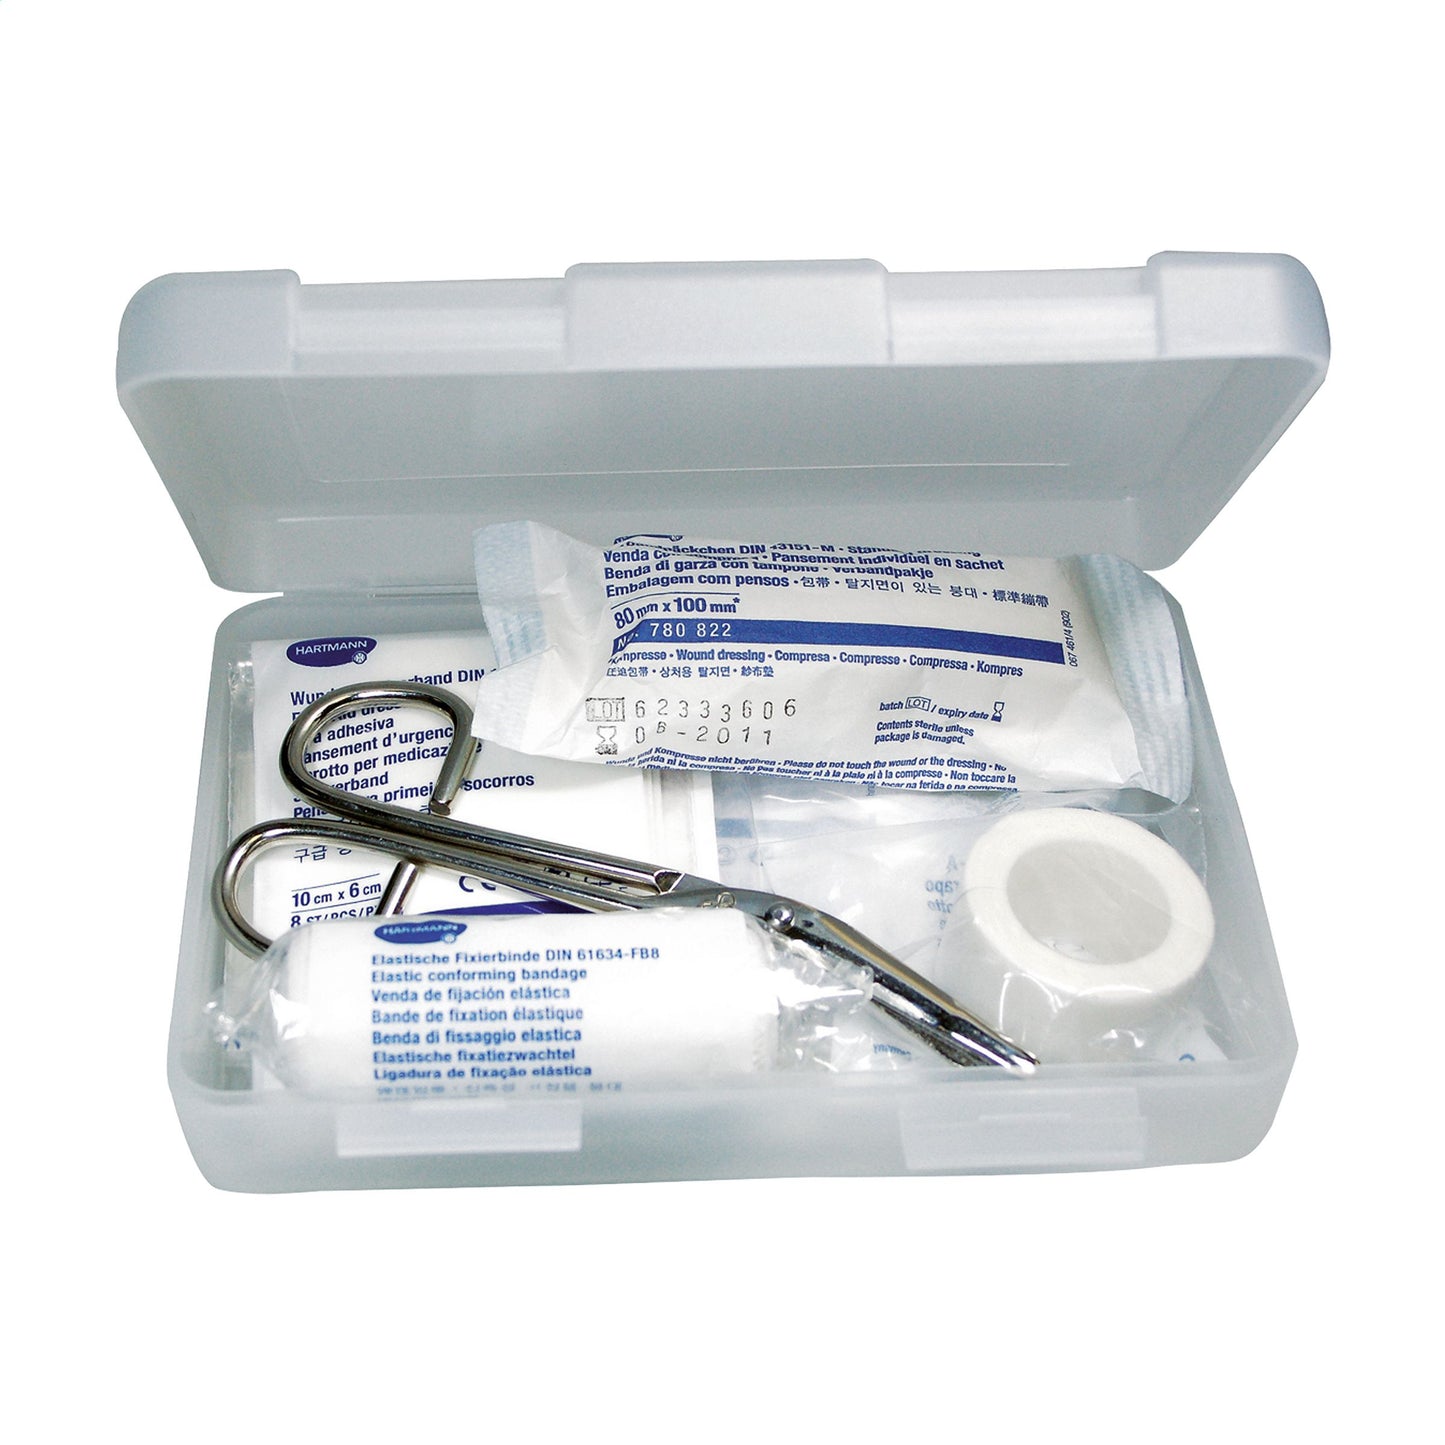 First Aid Kit Box Large Verbandskasten